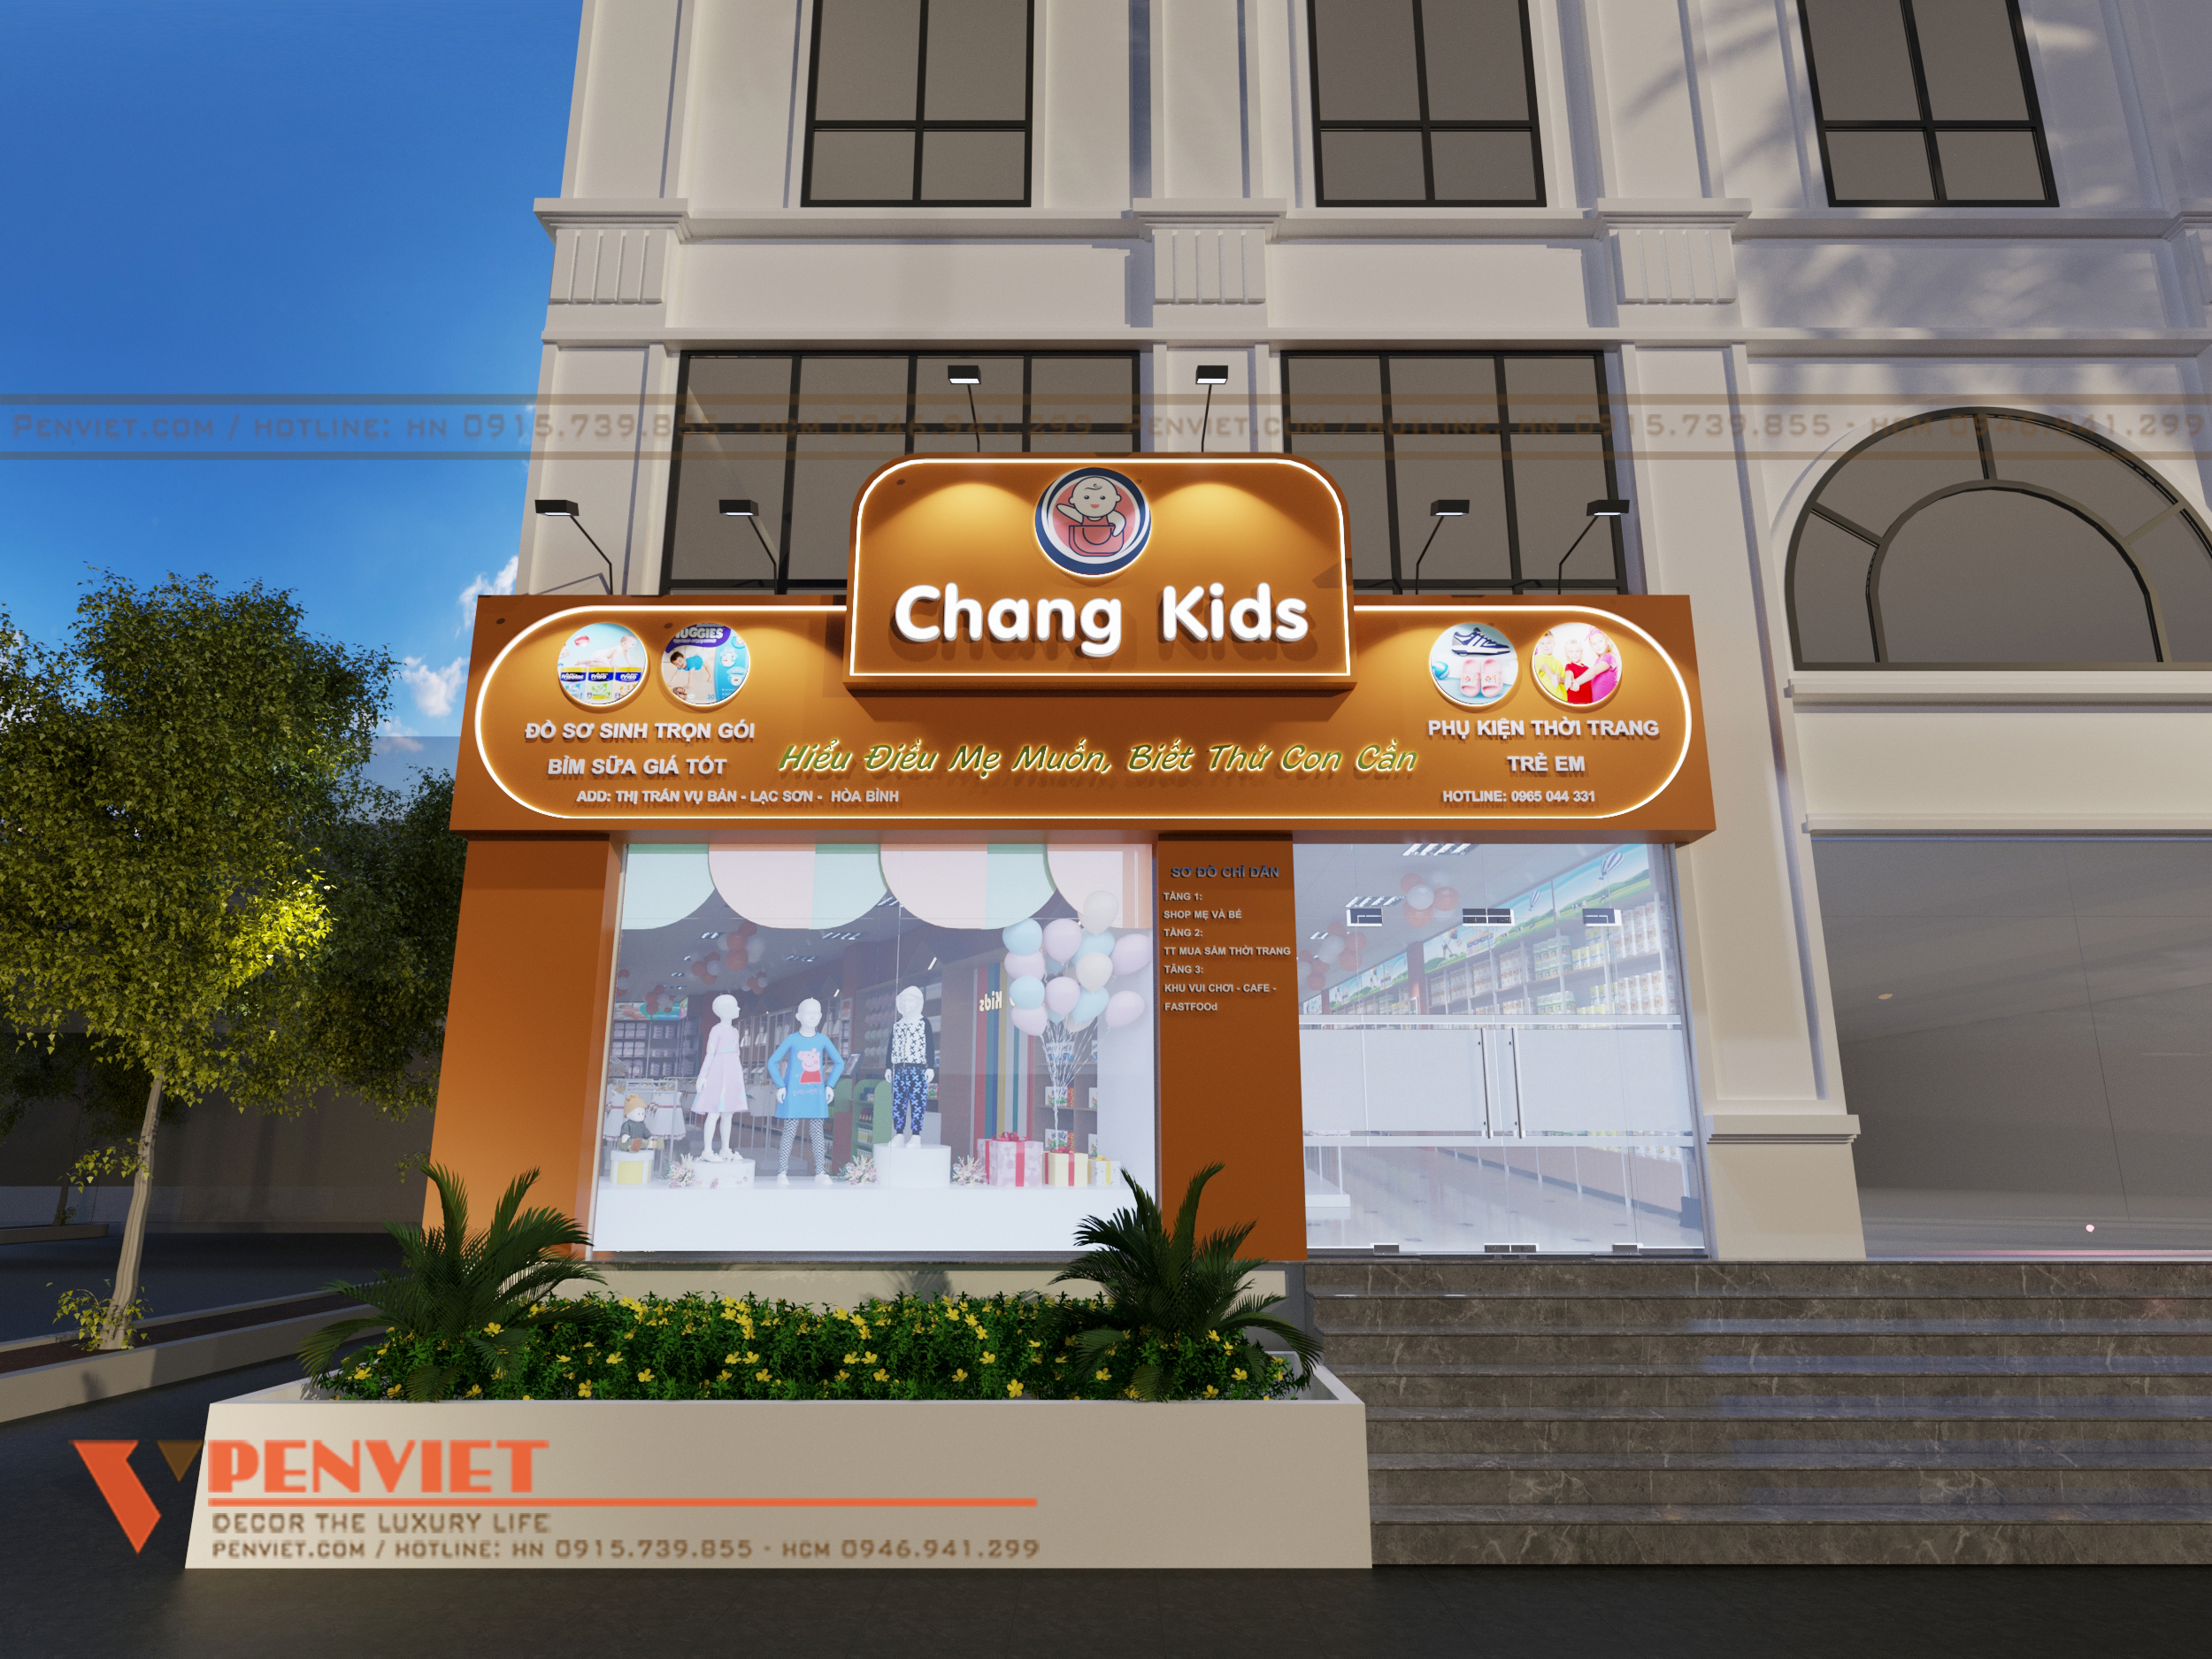 Thiết kế shop mẹ và bé Chang Kids có lợi thế về mặt bằng rộng lớn